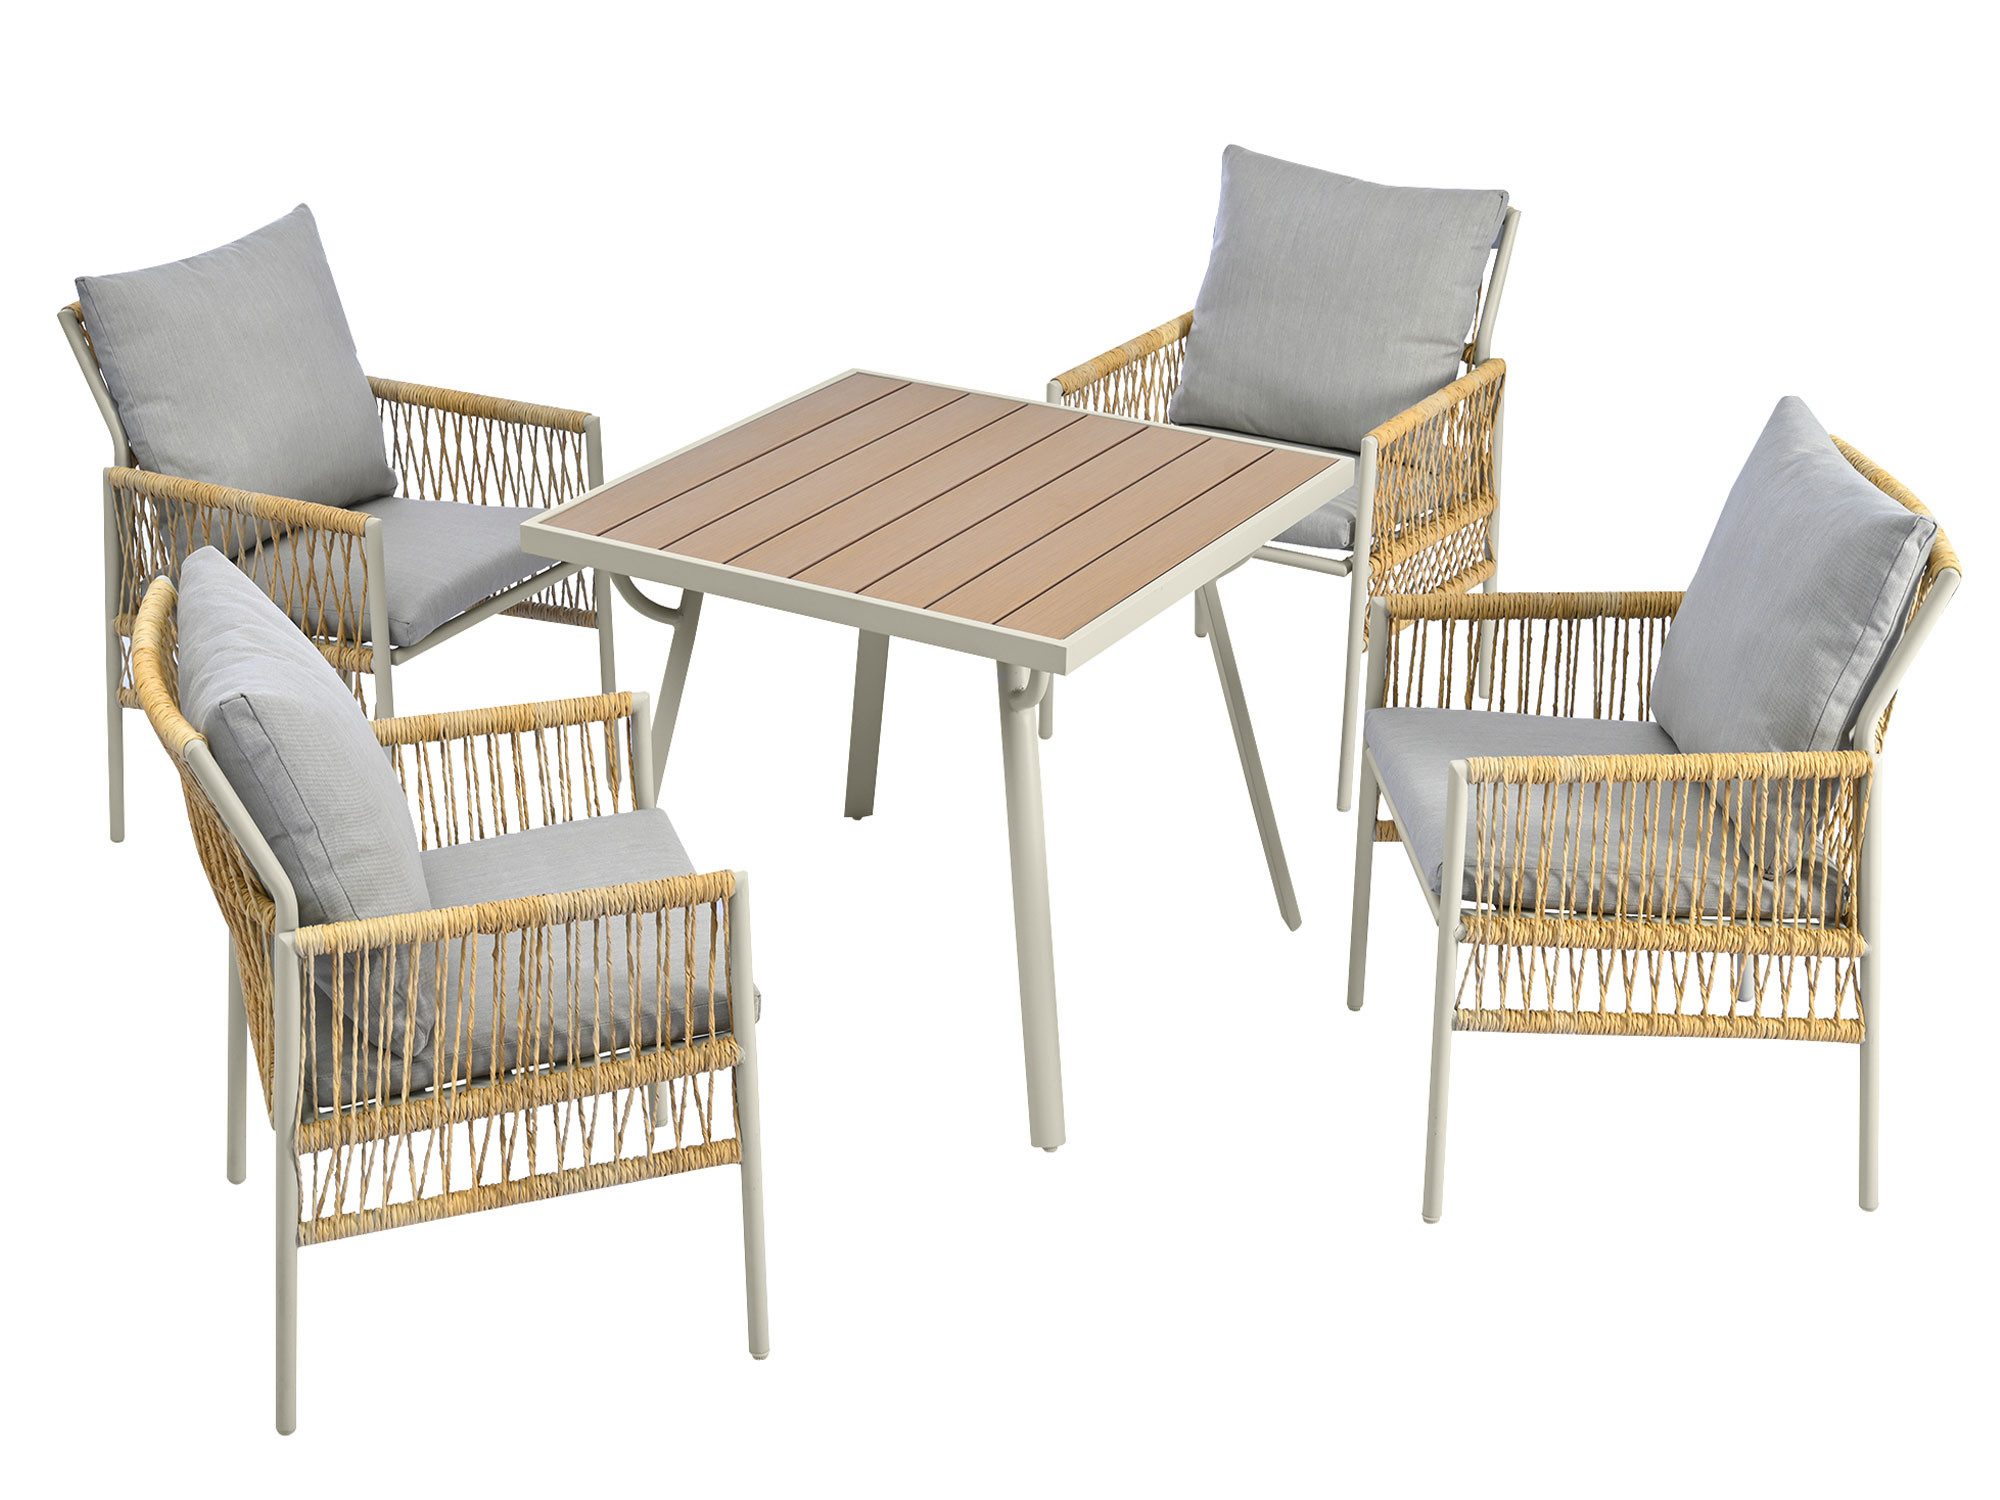 GelldG Garten-Essgruppe 4 Sessel, 1 Tisch, PE-Rattan mit verstellbaren Füßen, inkl Sitzkissen, (5-teiliges Esstisch-Set, 5-tlg., 4 Sessel, 1 Tisch), Leichter Rahmen aus verzinktem Eisen, umweltfreundliche Materialien